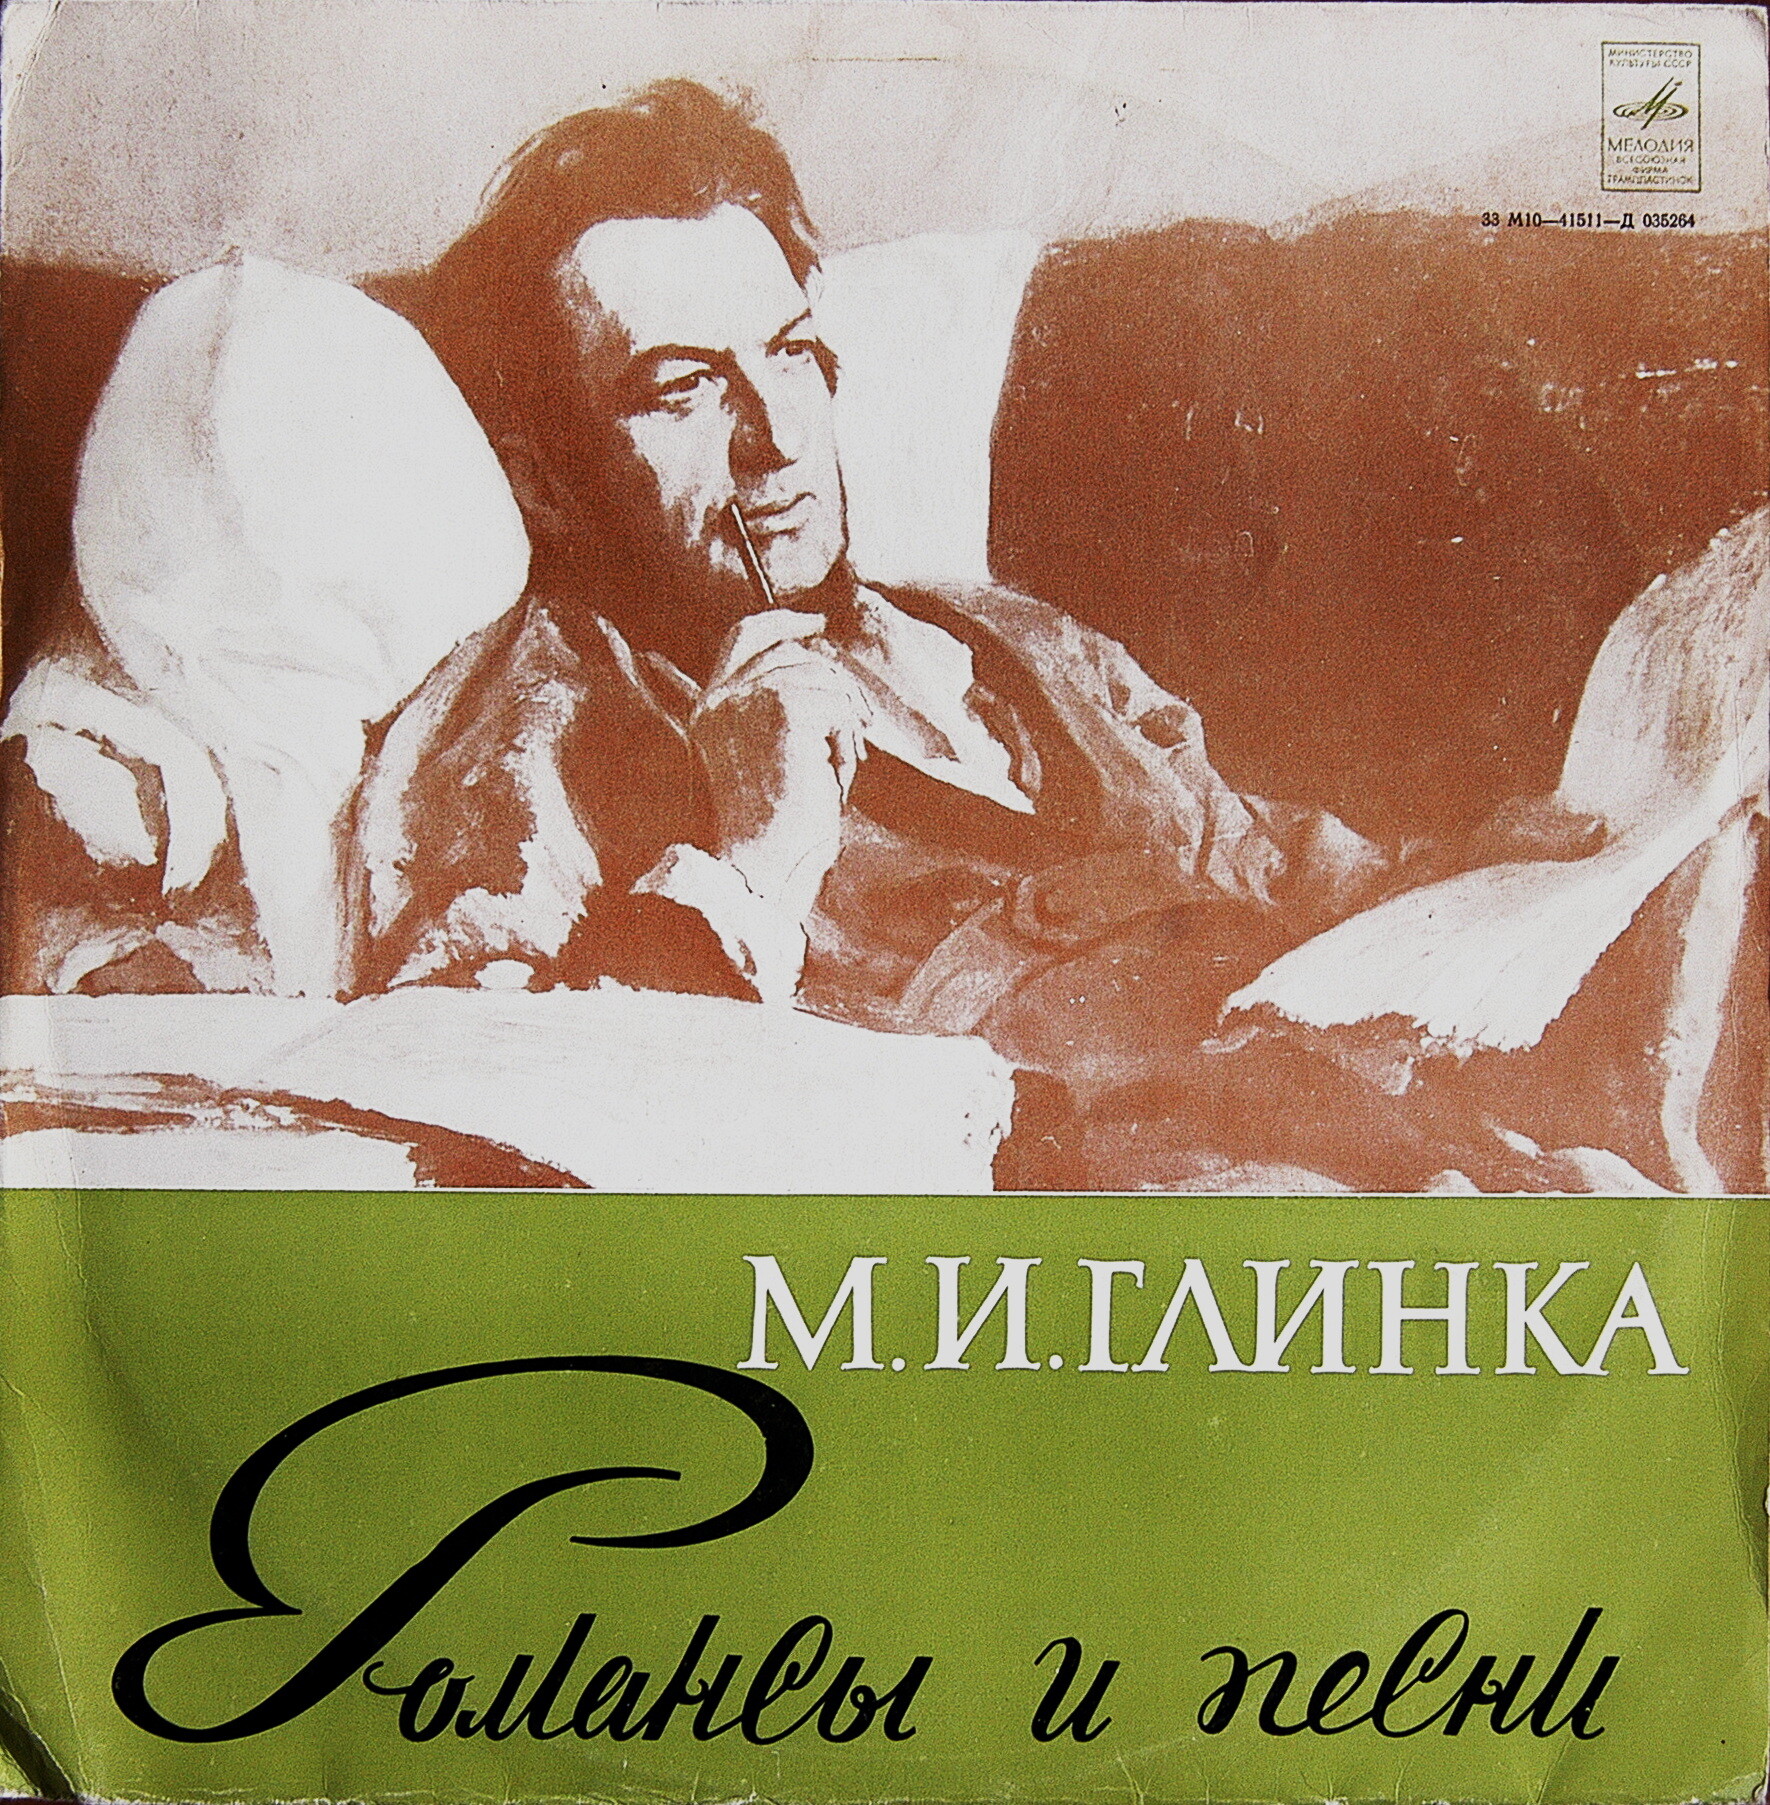 М. И. ГЛИНКА (1804-1857) - Романсы и песни